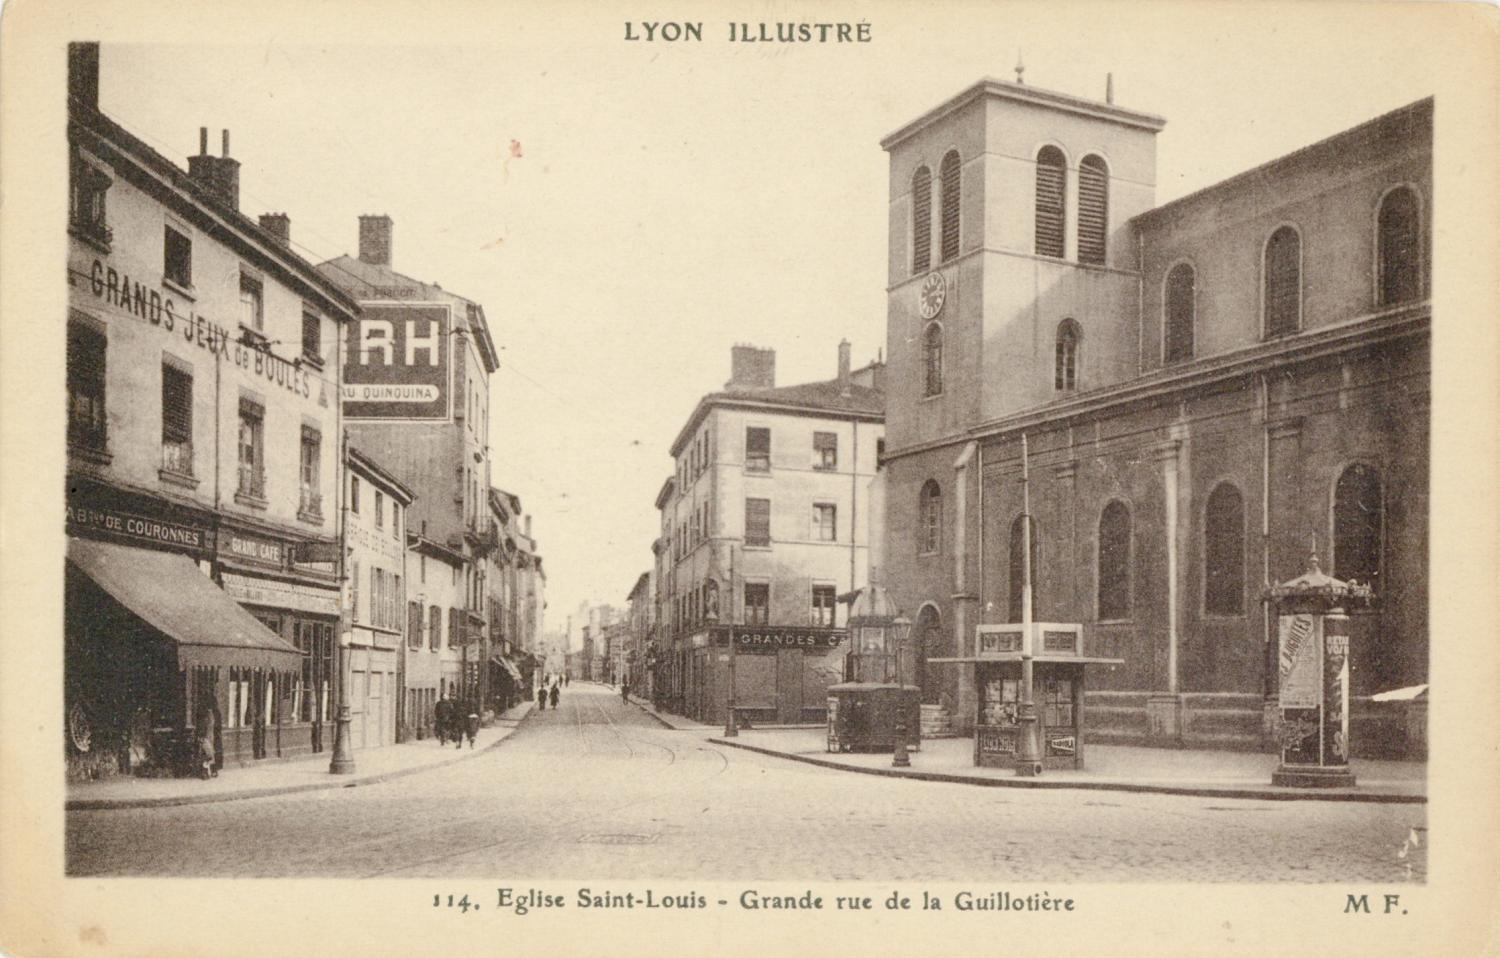 Lyon Illustré : Eglise Saint-Louis ; Grande rue de la Guillotière.